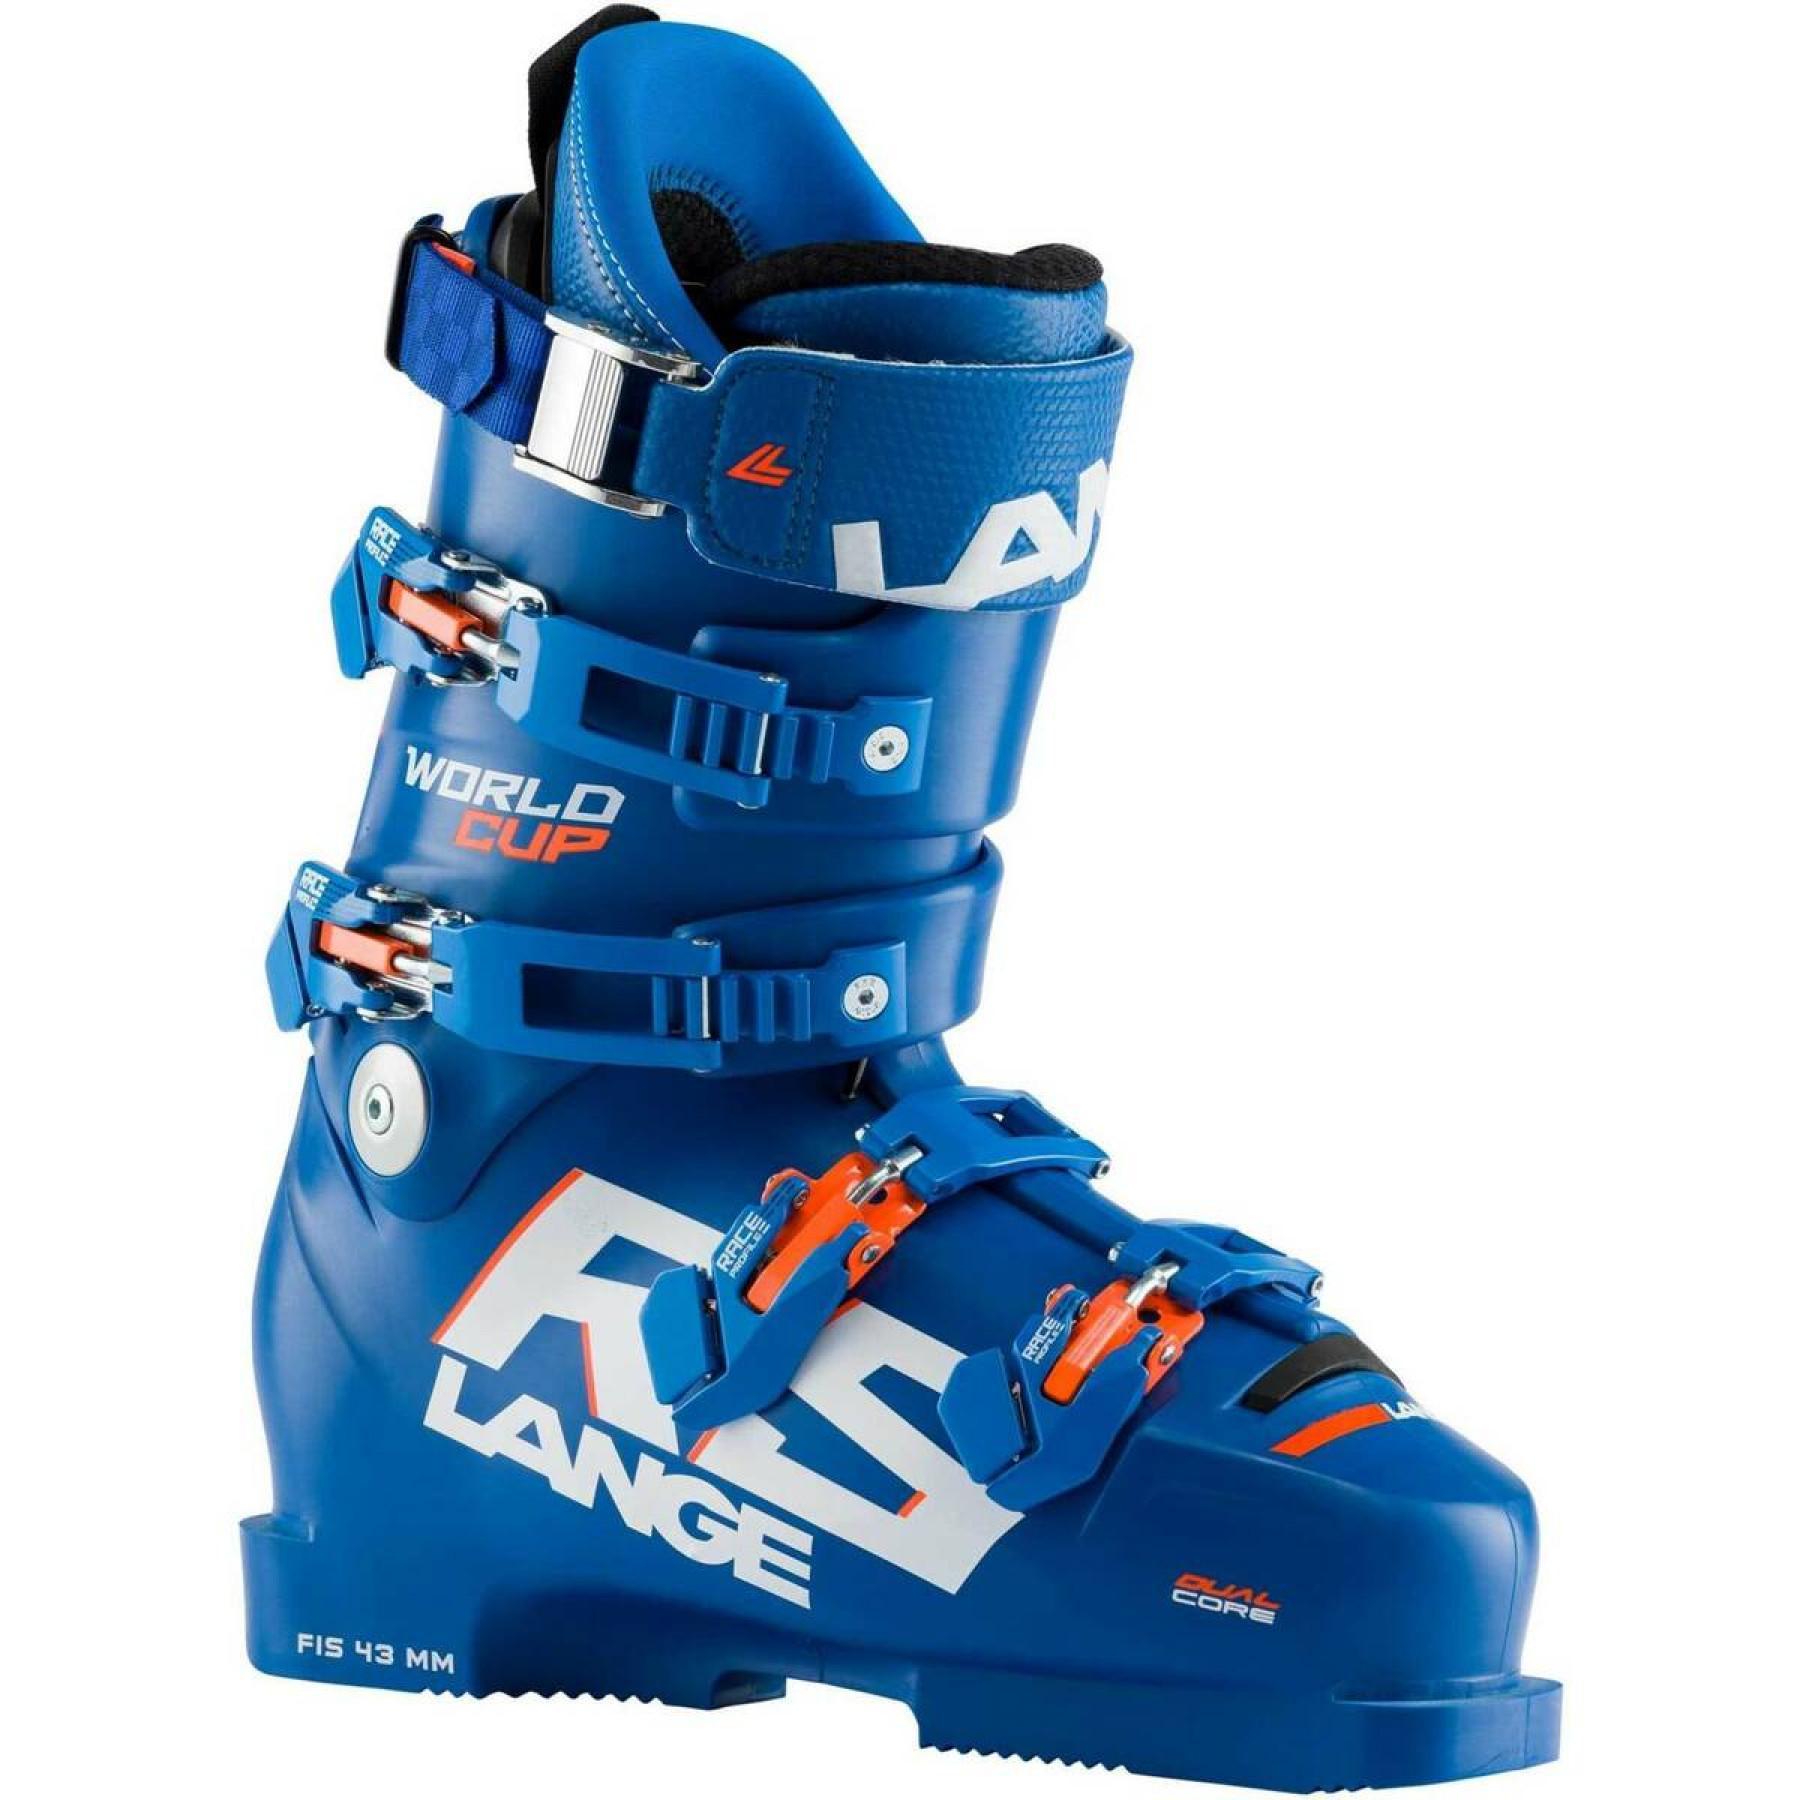 Chaussures de ski Lange world cup rs zc